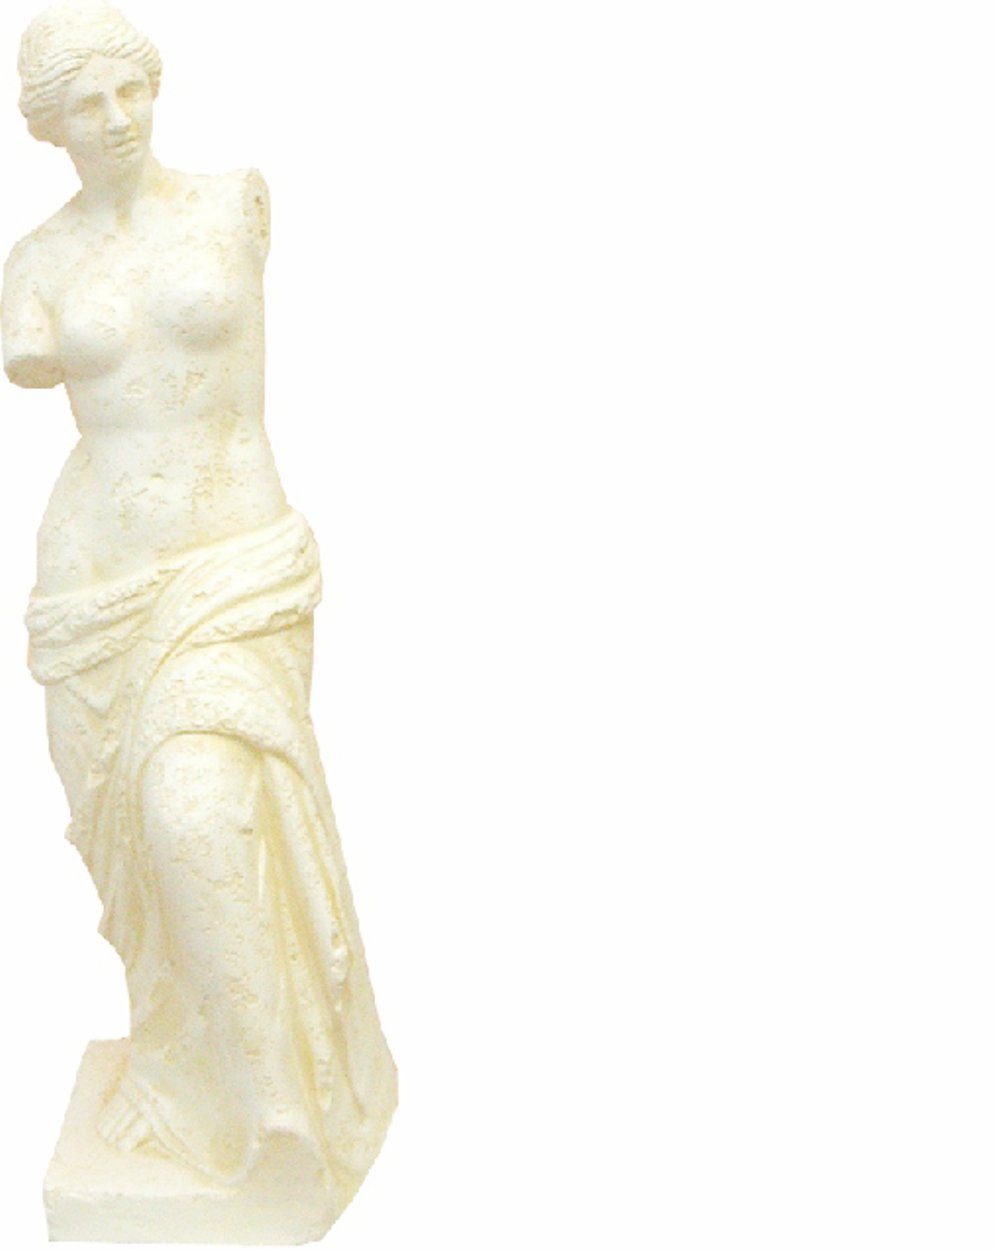 JVmoebel Skulptur Design Figur Antik Stil Skulptur Griechische Figuren Dekoration 0330